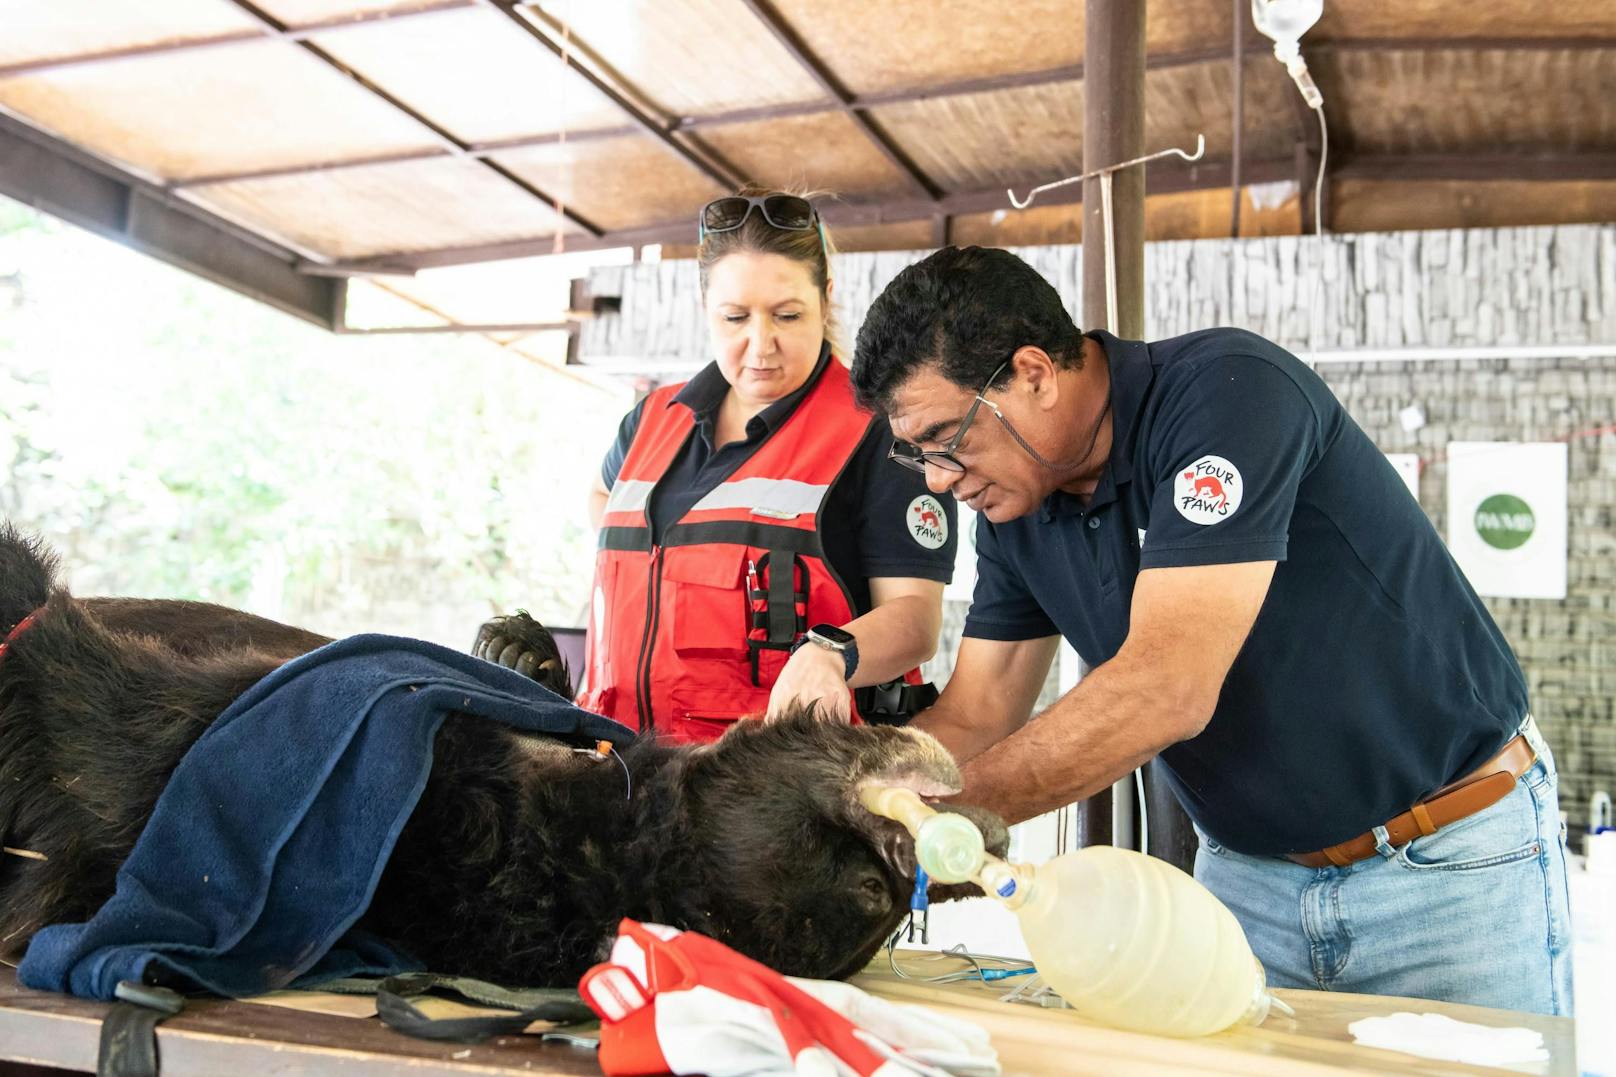 Es wurde eine umfassende tierärztliche Untersuchung durchgeführt, die Verletzungen behandelt, die Nasenringe entfernt und beide Bären geimpft.